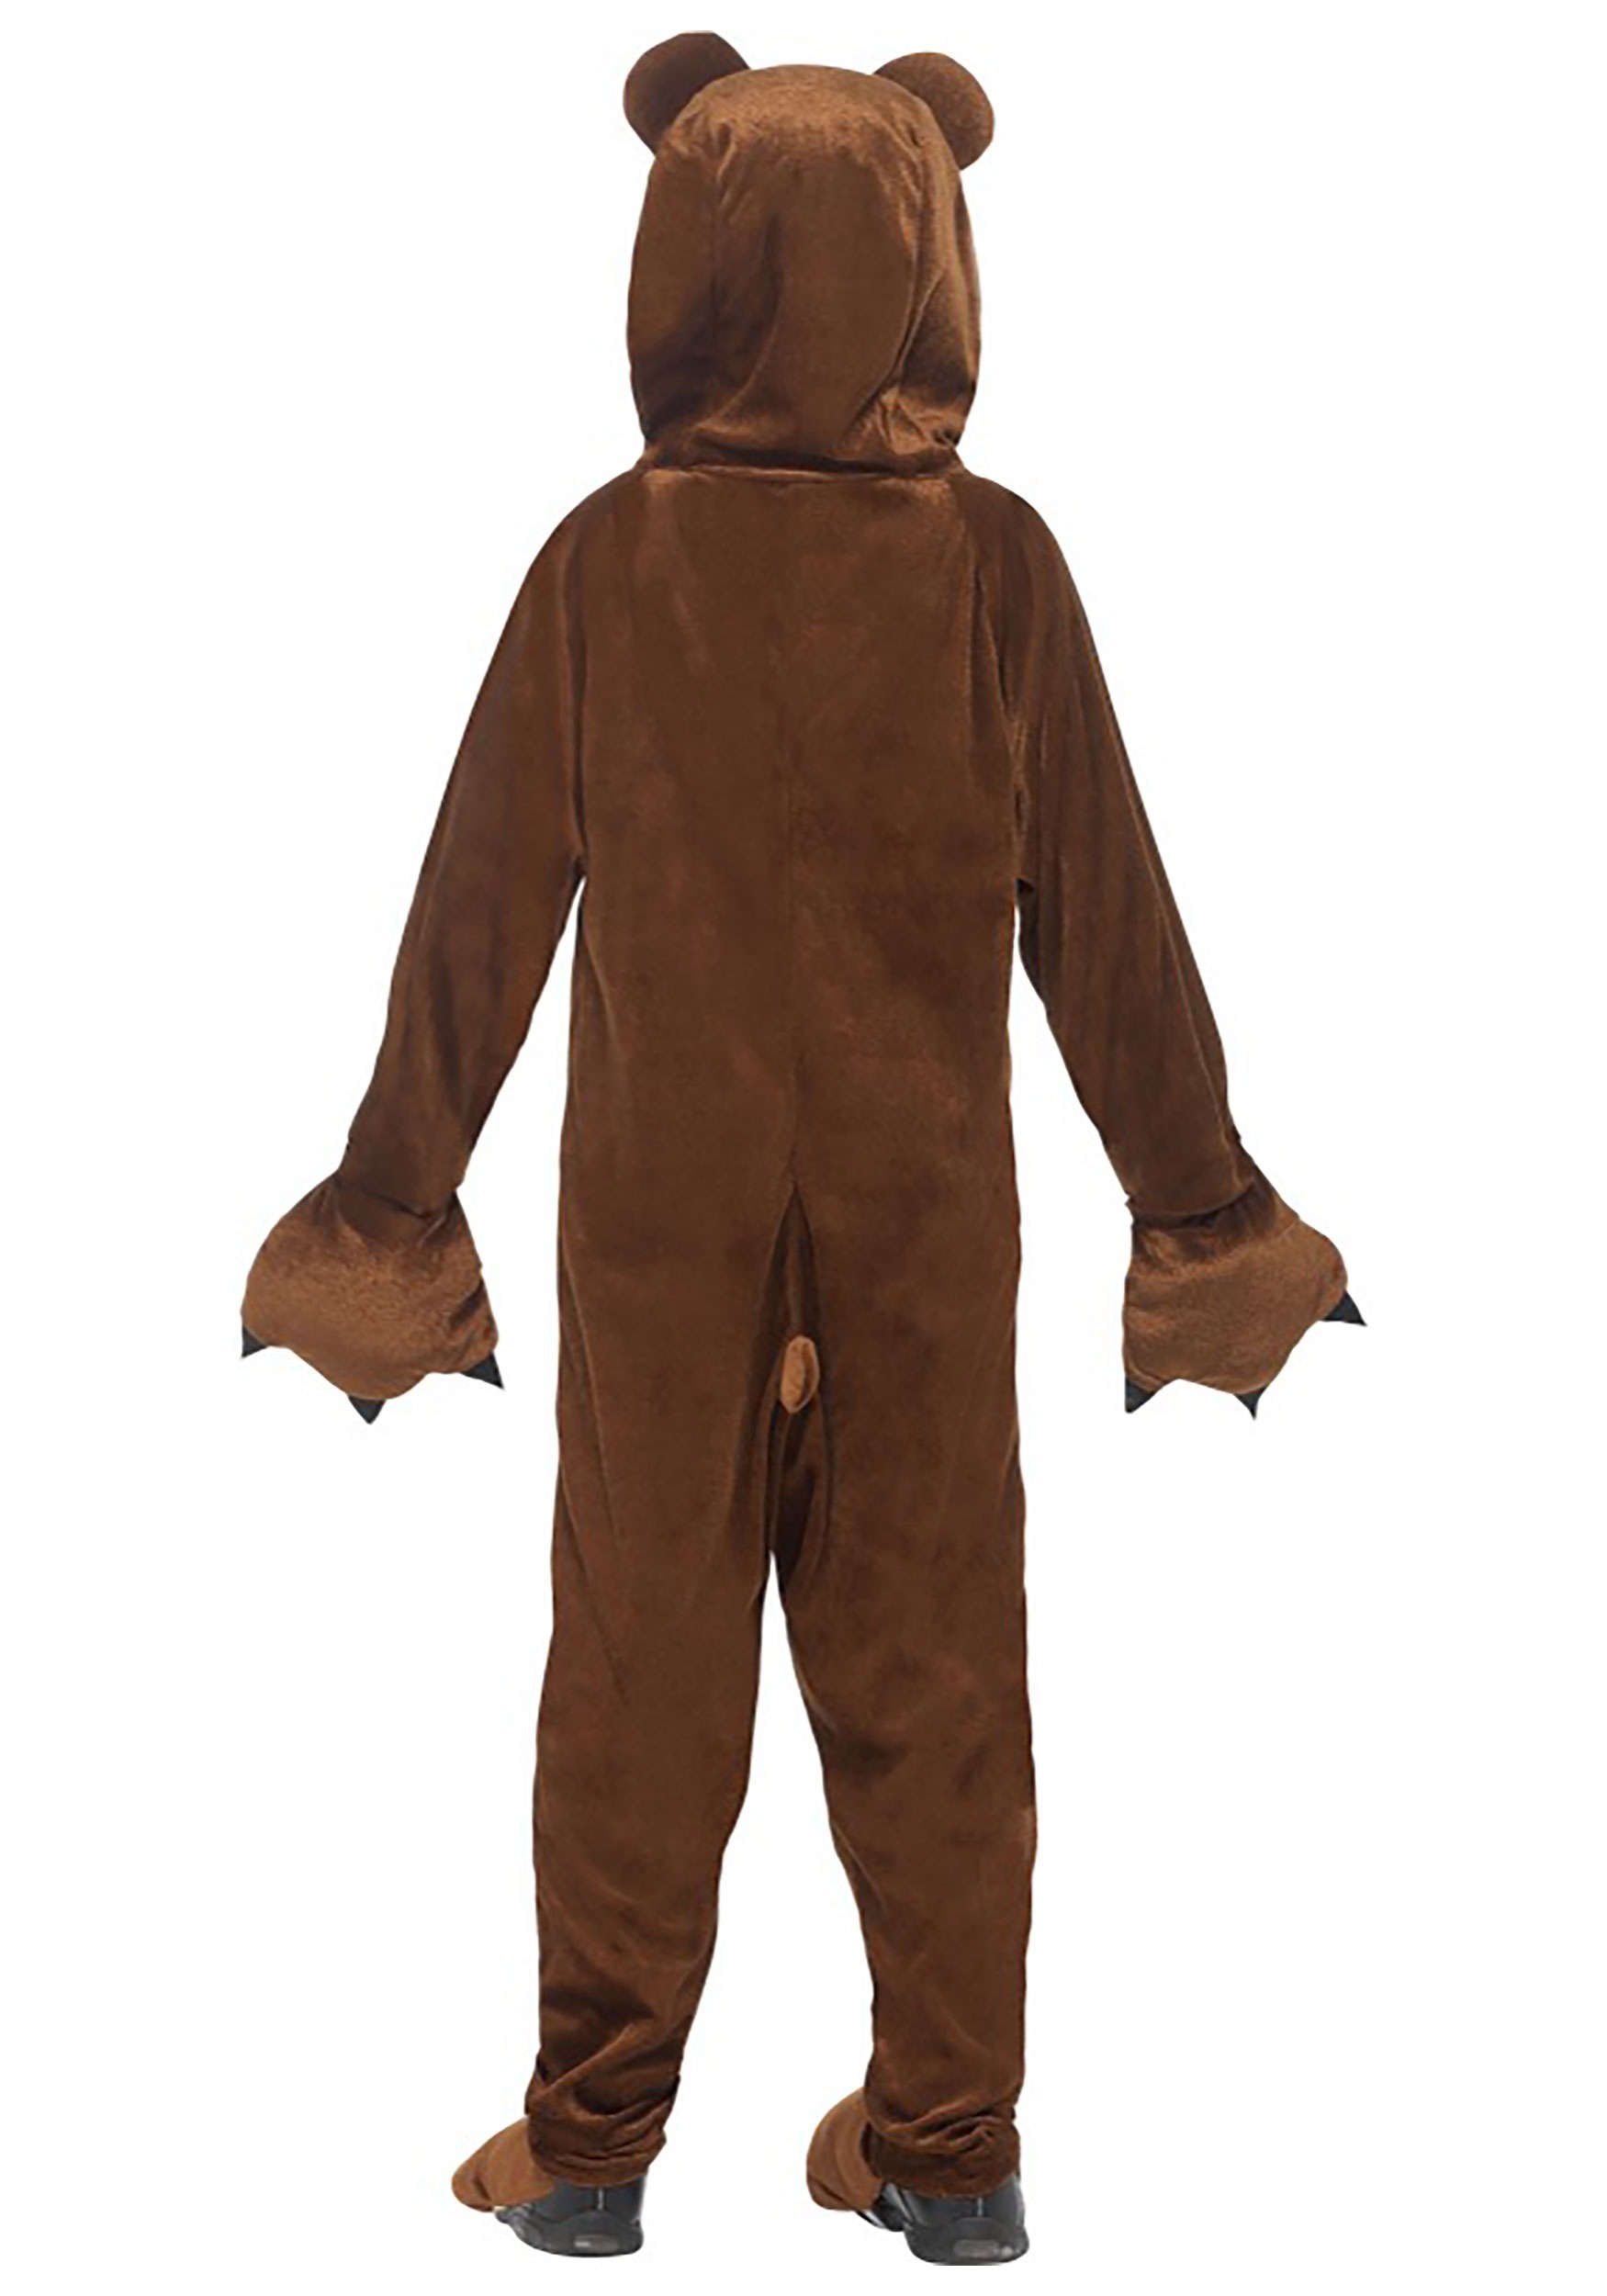 Bear Fancy Dress Costume For Kids